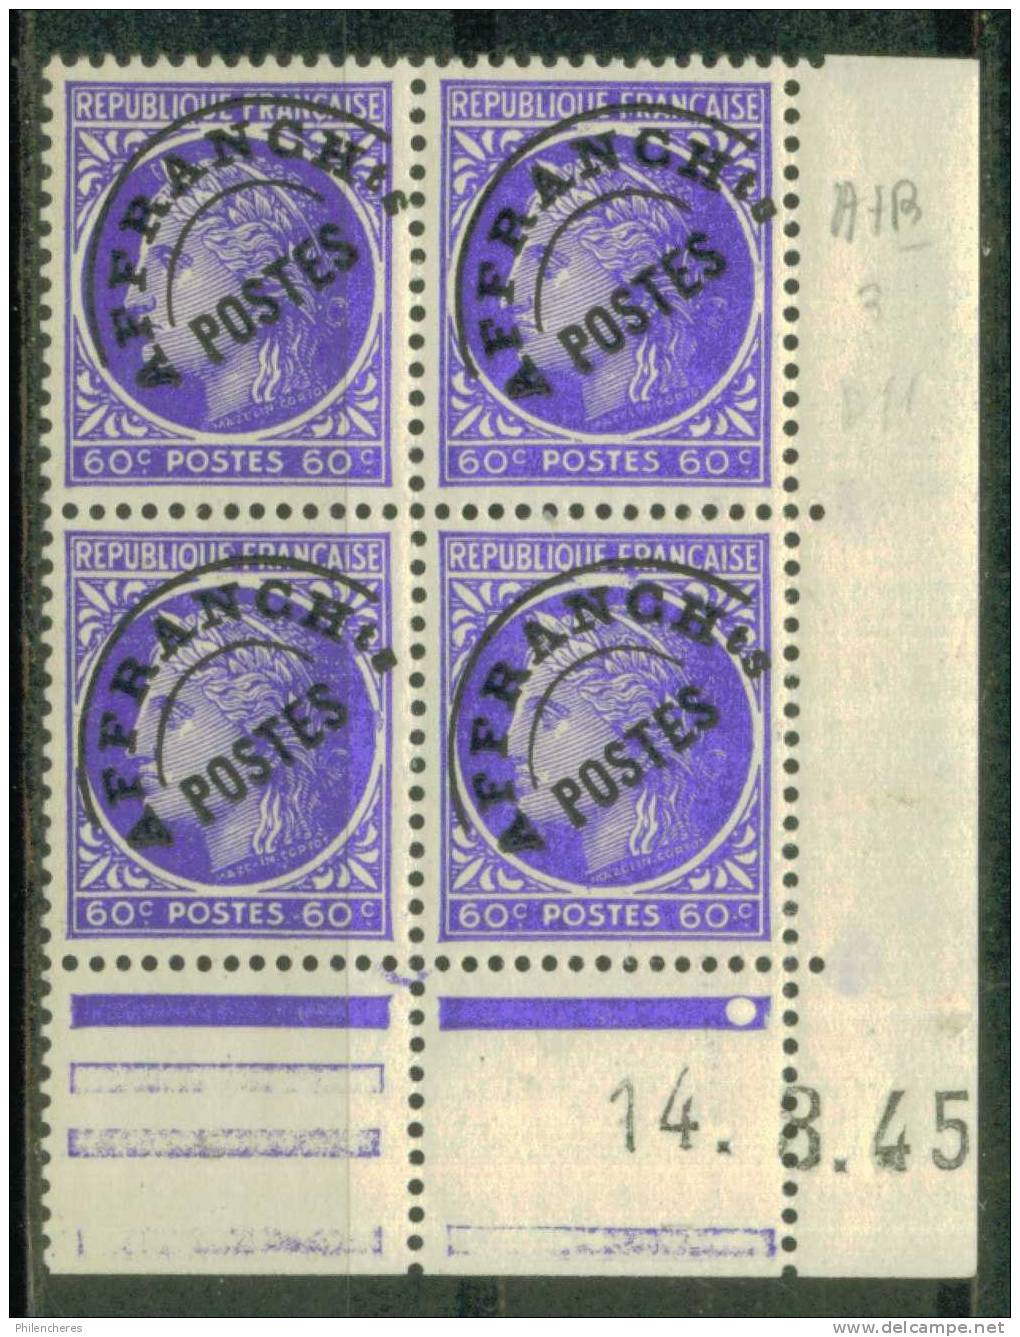 France Bloc De 4 - Coin Daté 1945 - Yvert Préoblitéré N° 87 X - Cote 4 Euros - Prix De Départ 1 Euro - Préoblitérés